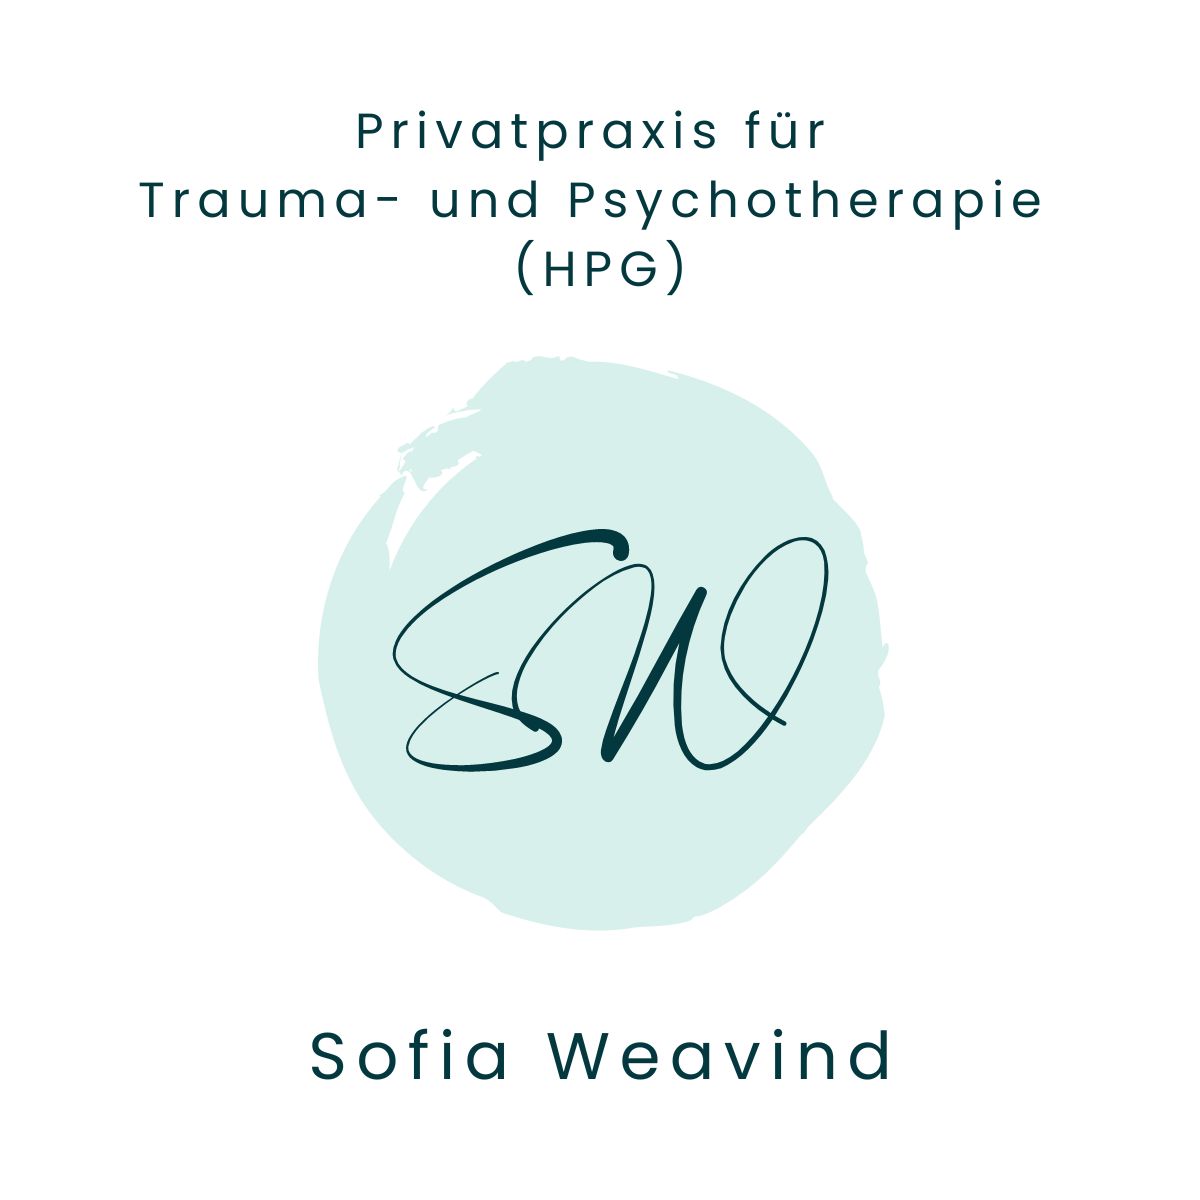 Privatpraxis für Trauma- und Psychotherapie (HPG)